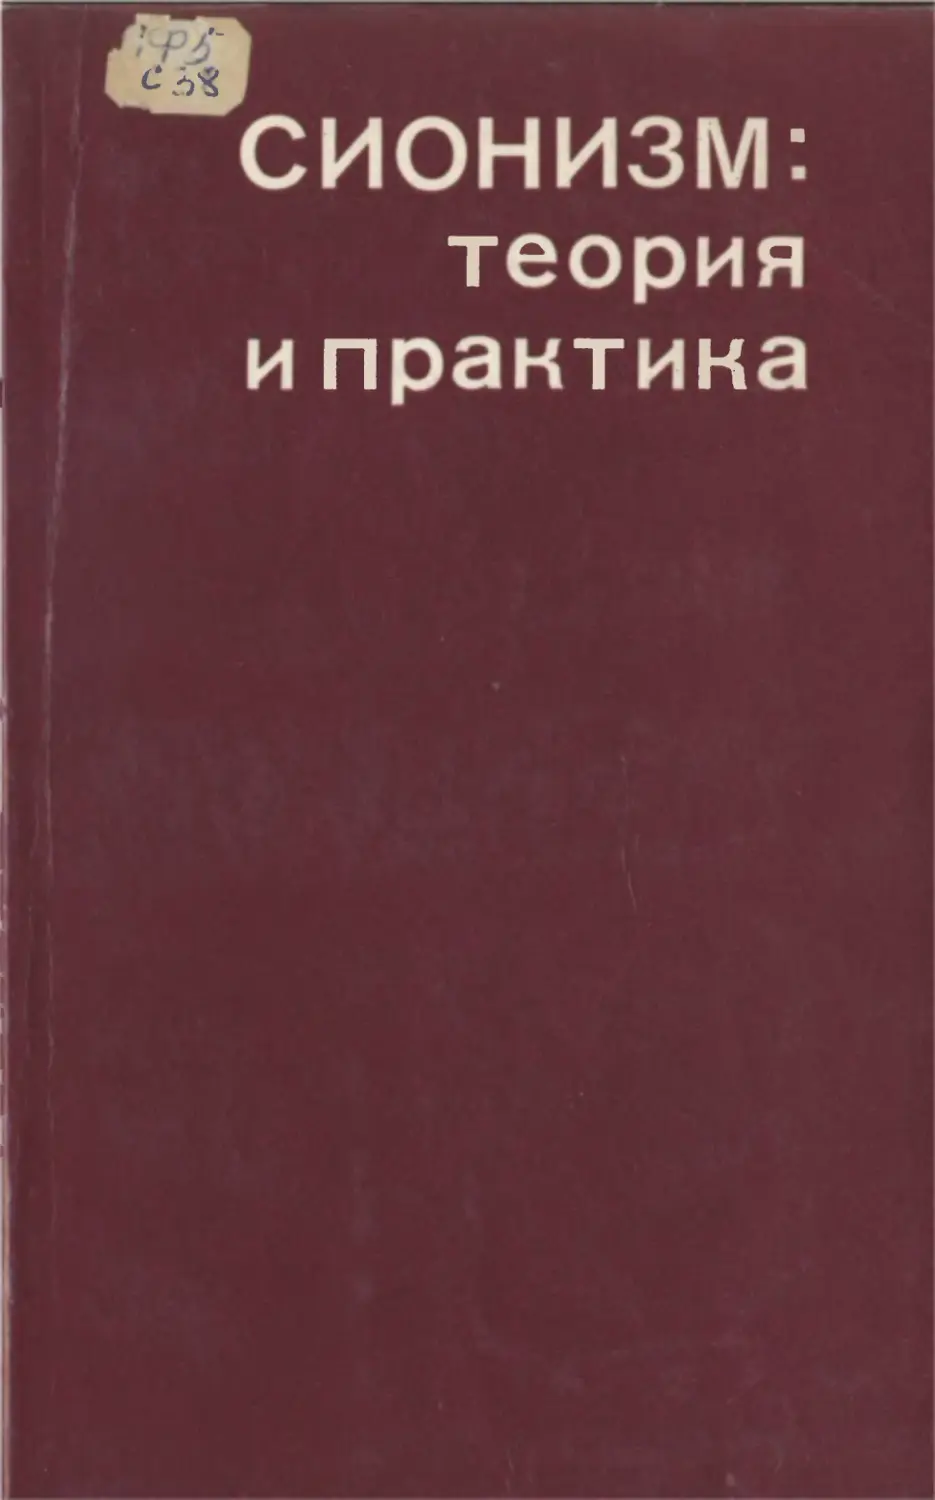 Сионизм: теория и практика. М., Политиздат, 1973. 240 с